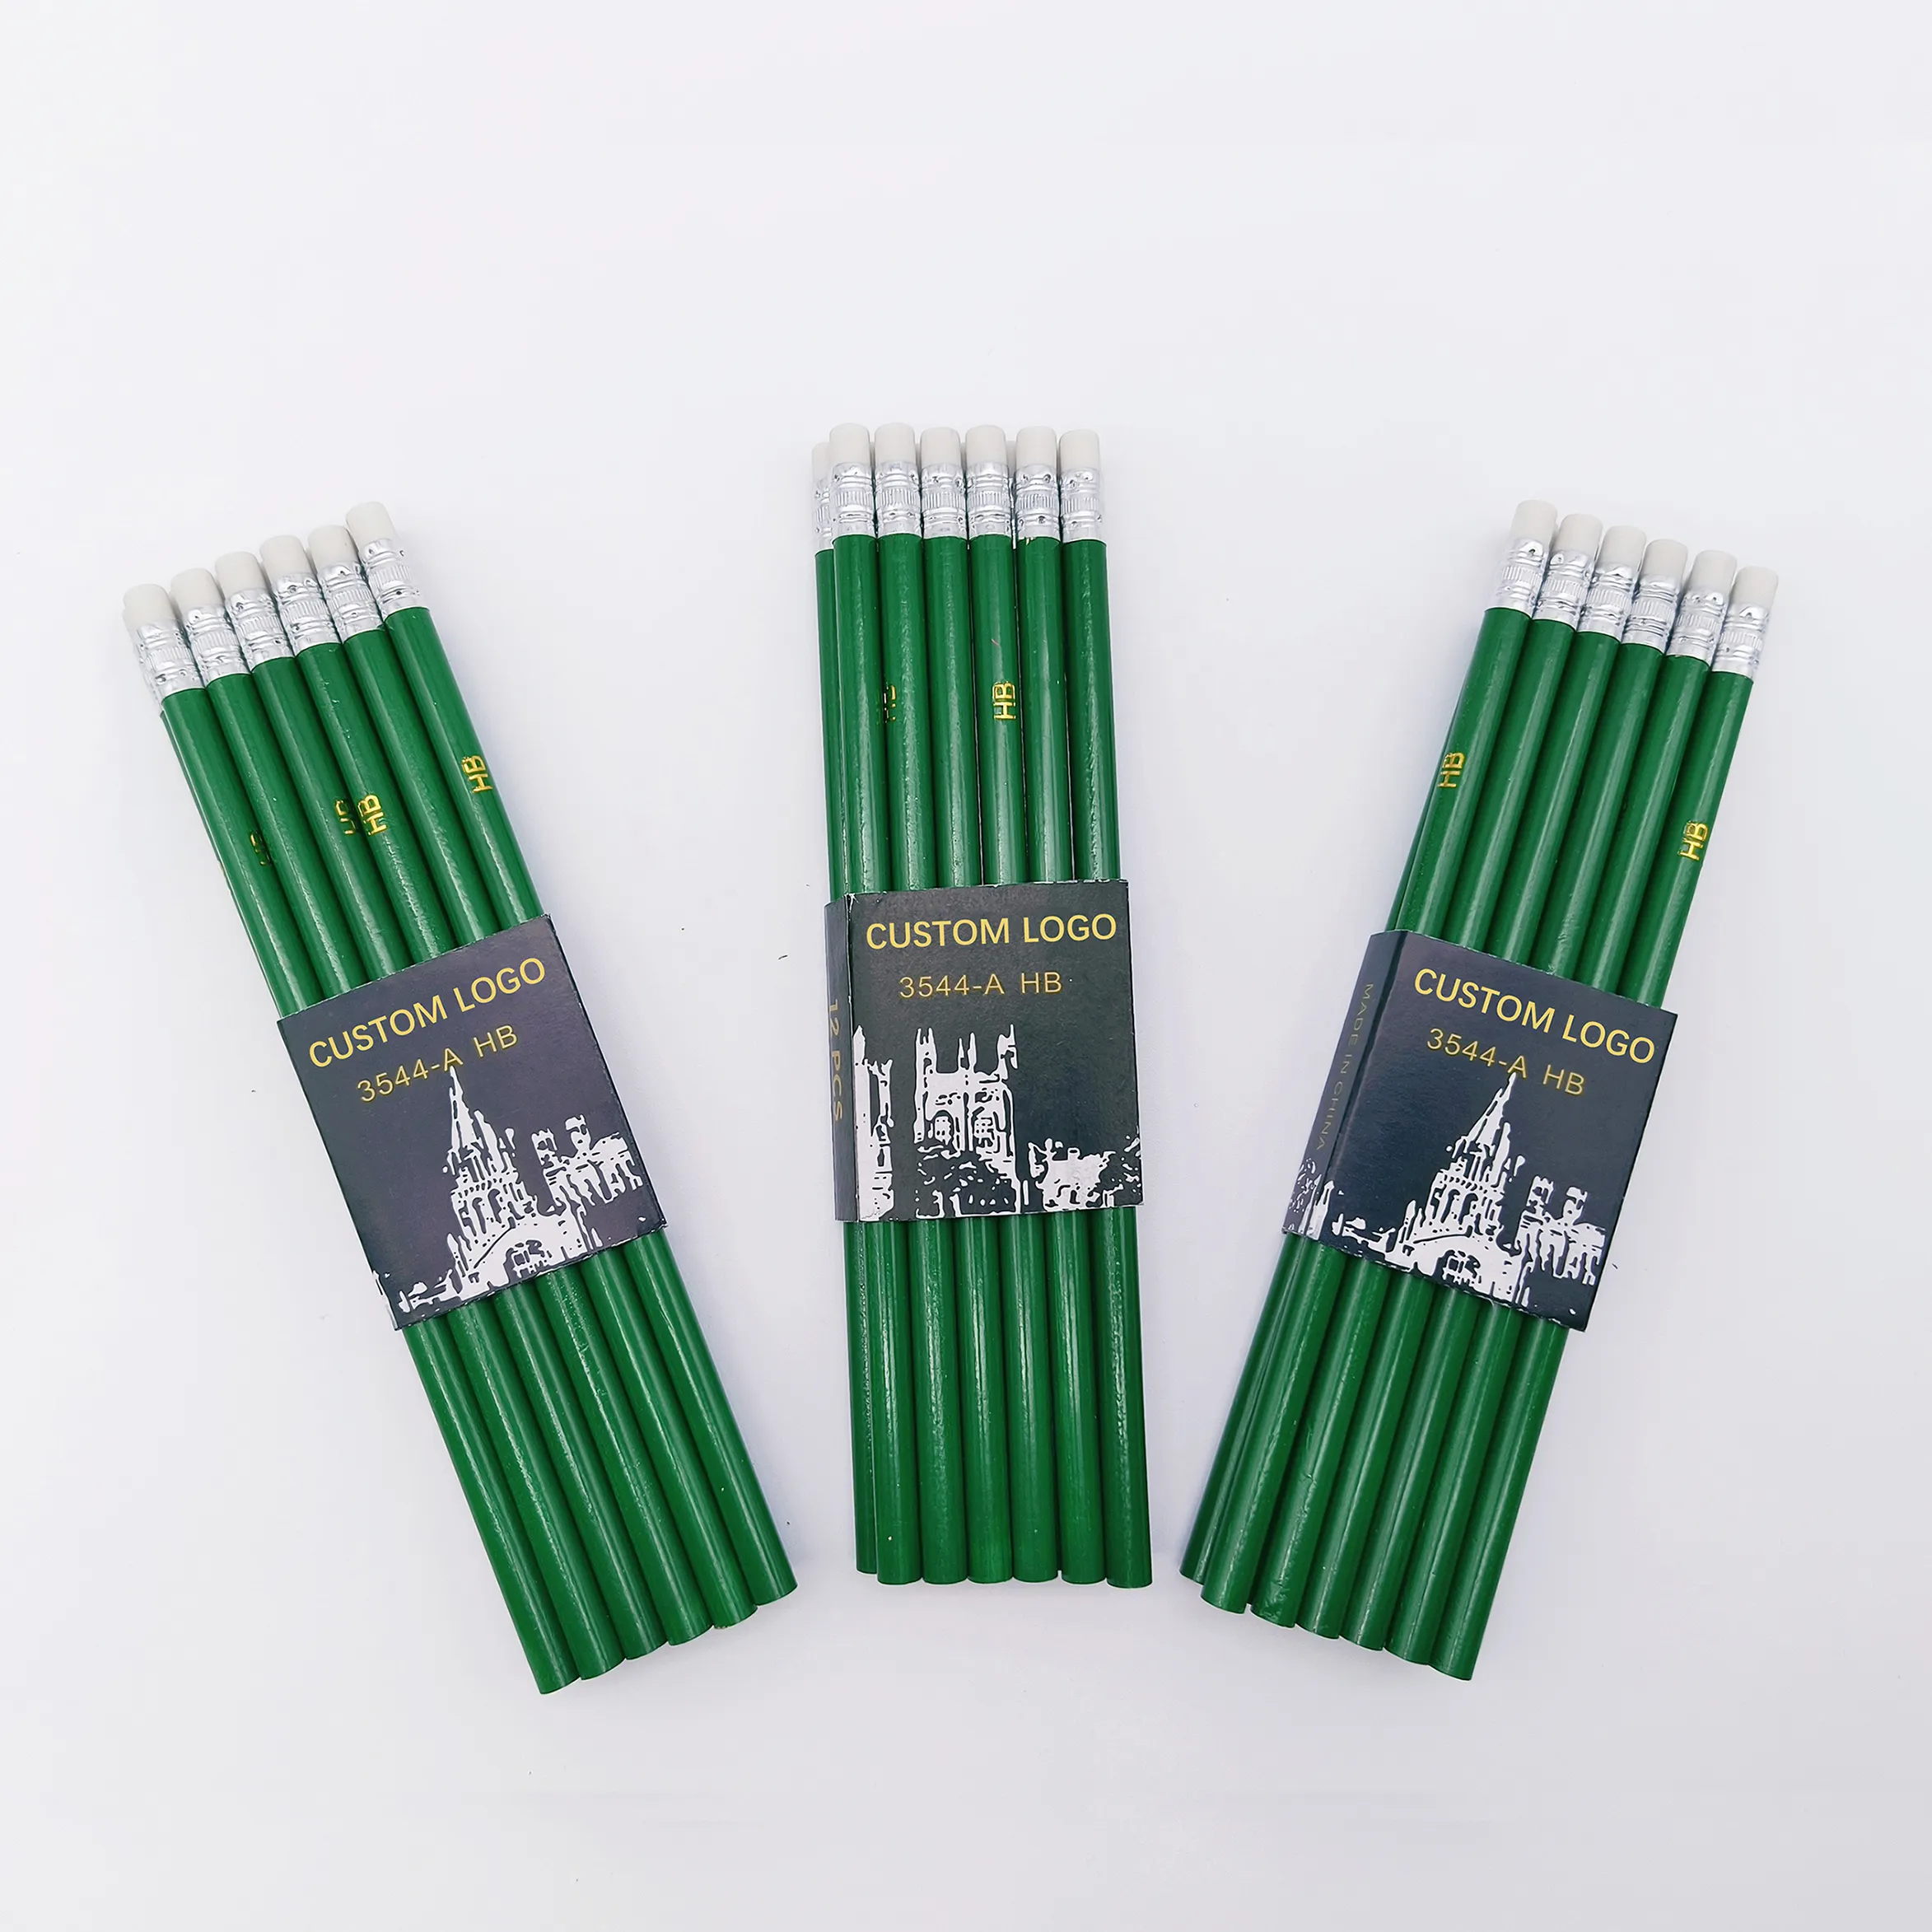 Fai il tuo marchio di matite scolastiche riciclate ecologiche verdi personalizzate